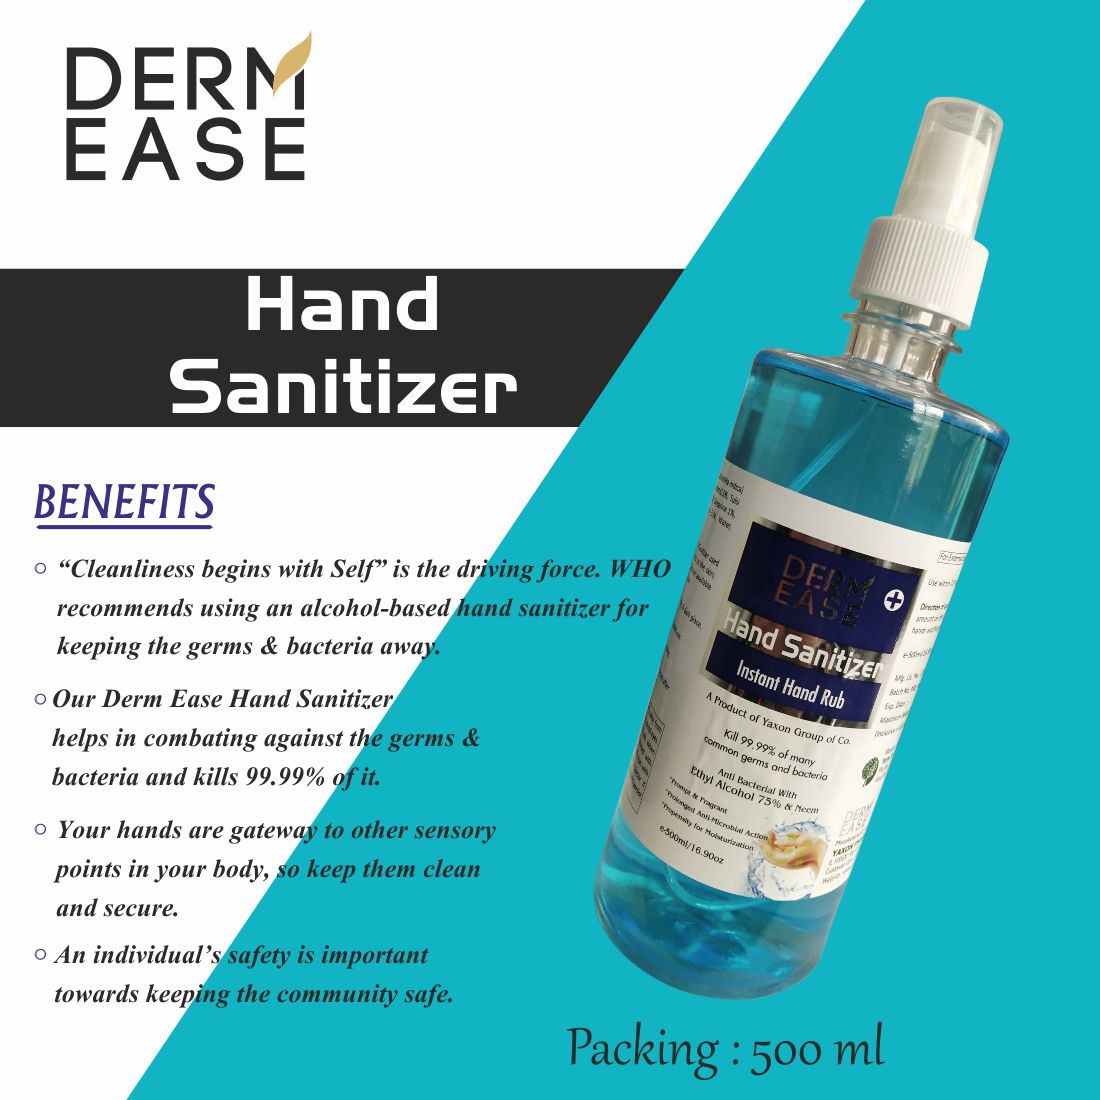 DERM EASE MIST PUMP SPRAY Hand Sanitizer 500ml